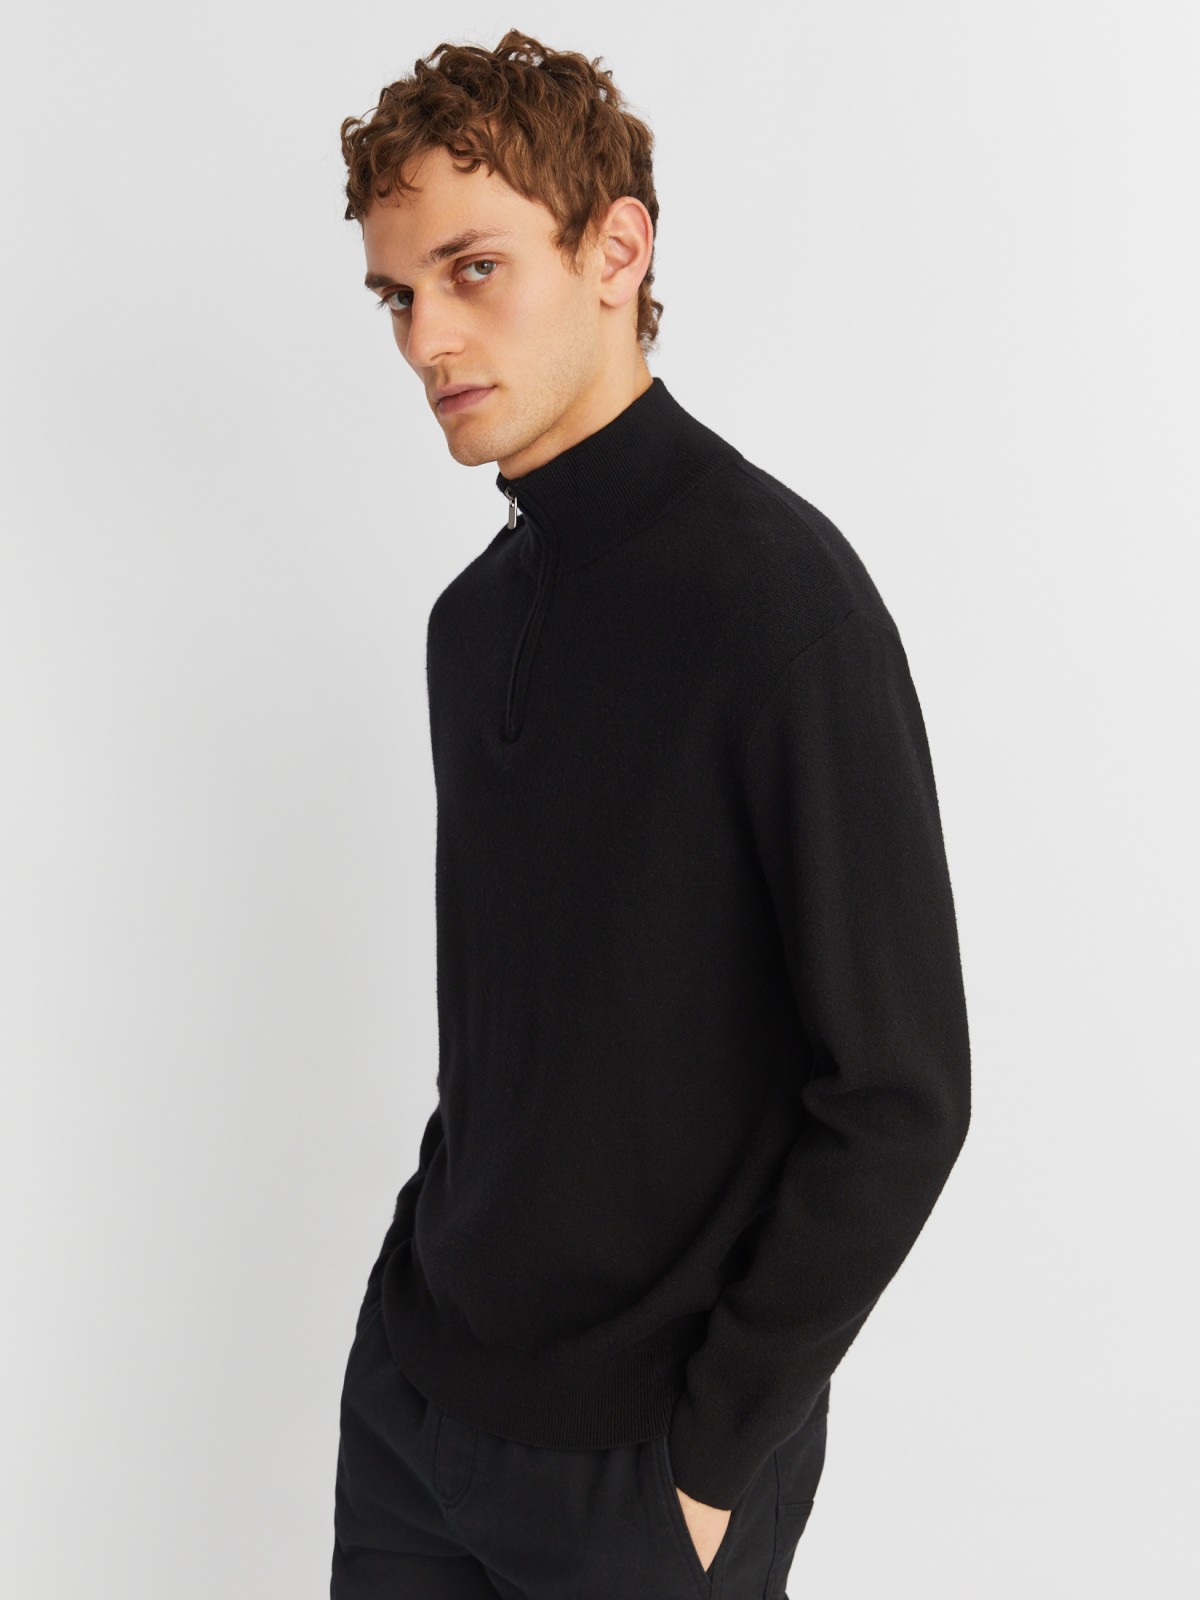 Трикотажный свитер с воротником-стойкой на молнии zolla 213426823021, цвет черный, размер L